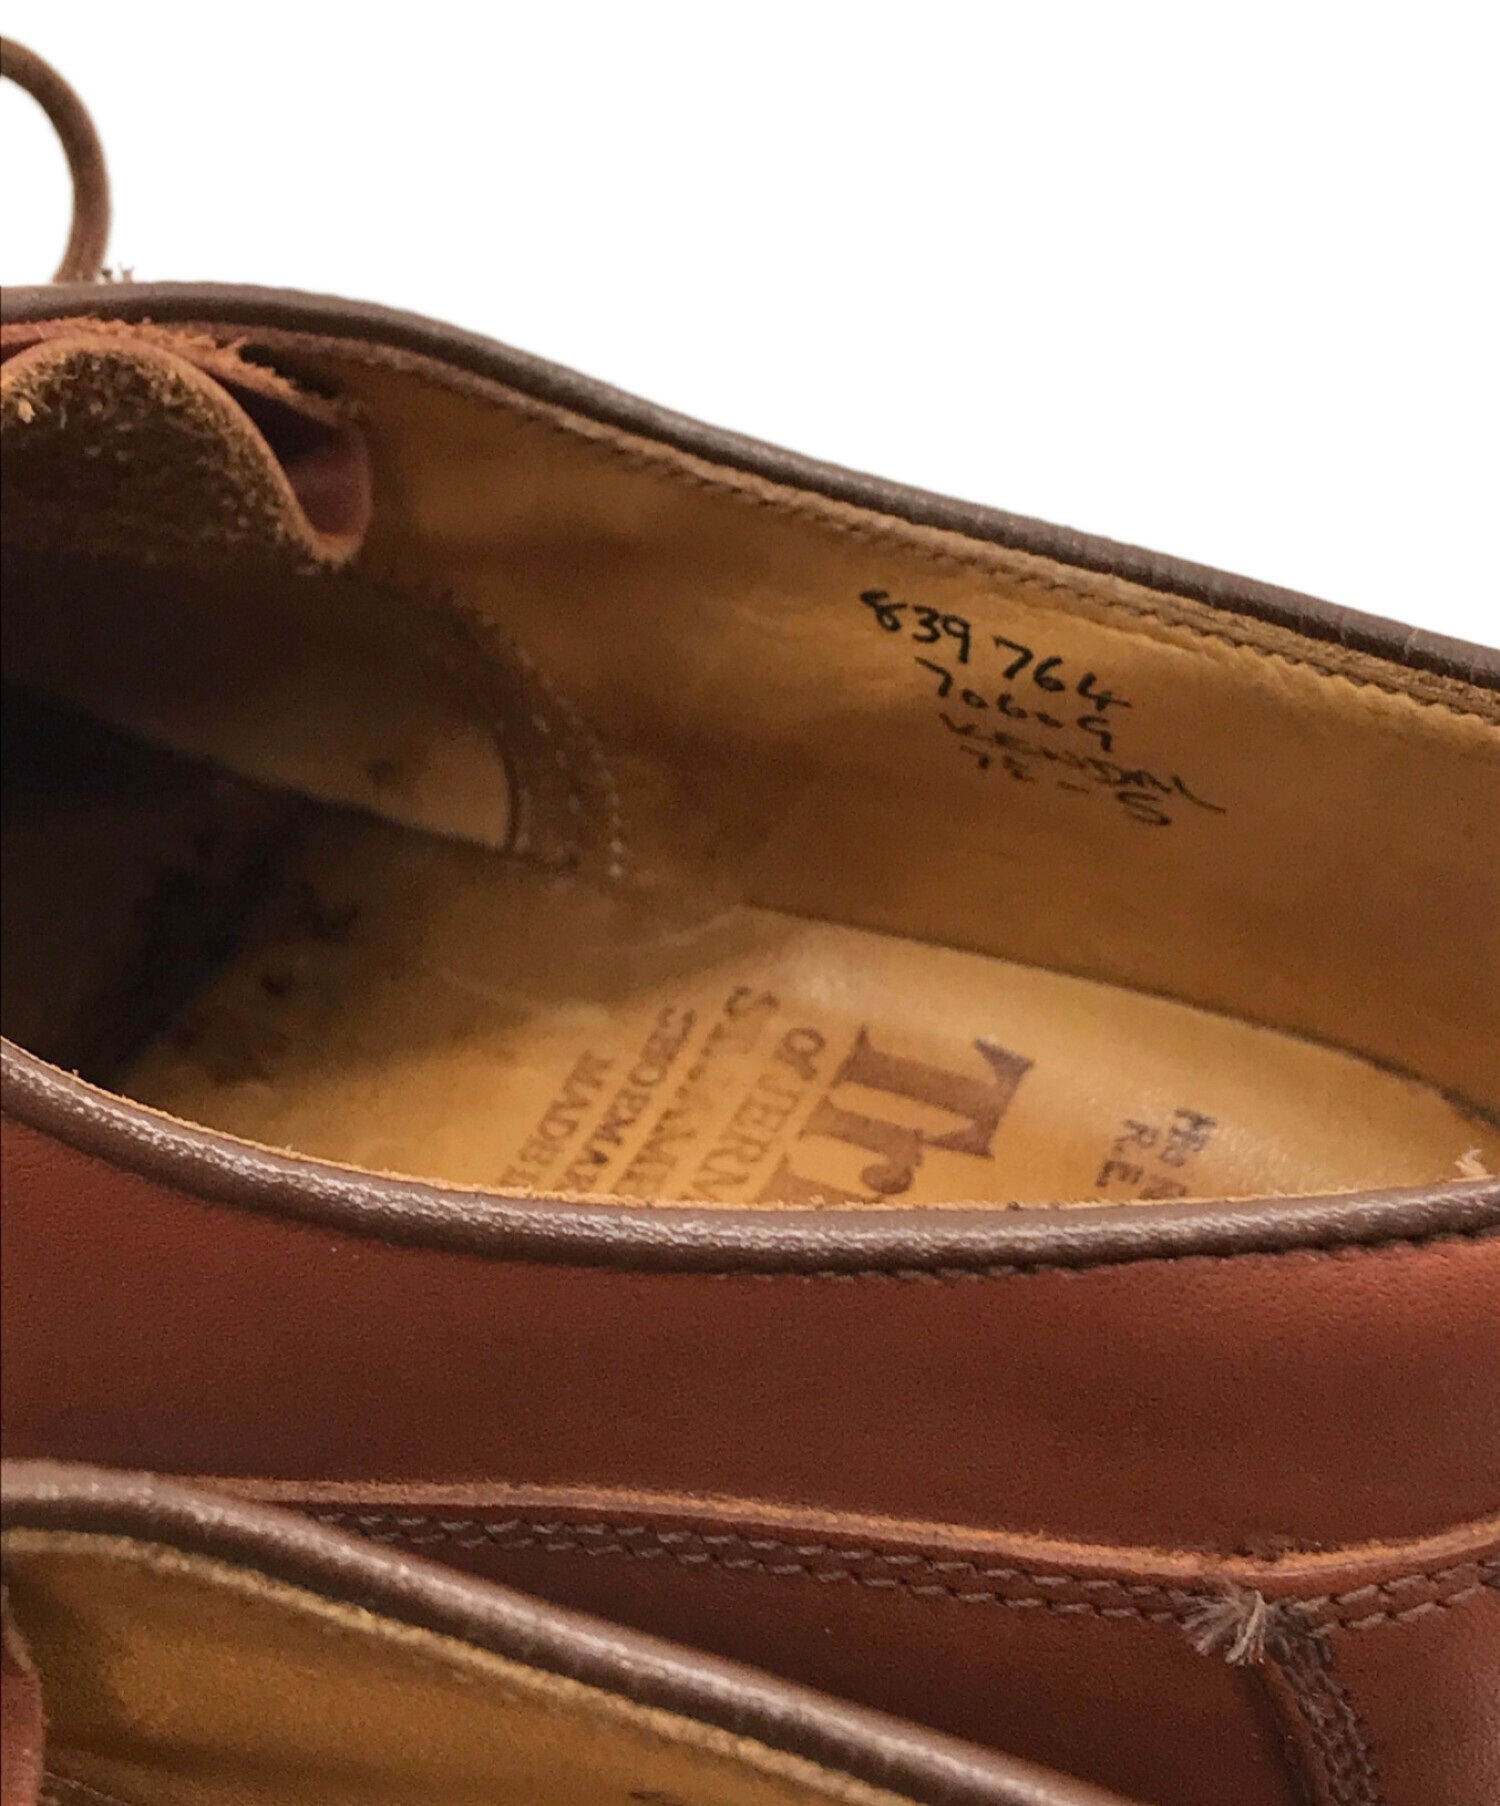 【良品】トリッカーズ ケンダル プレーン 革靴 23.5 ブラウン イングランド